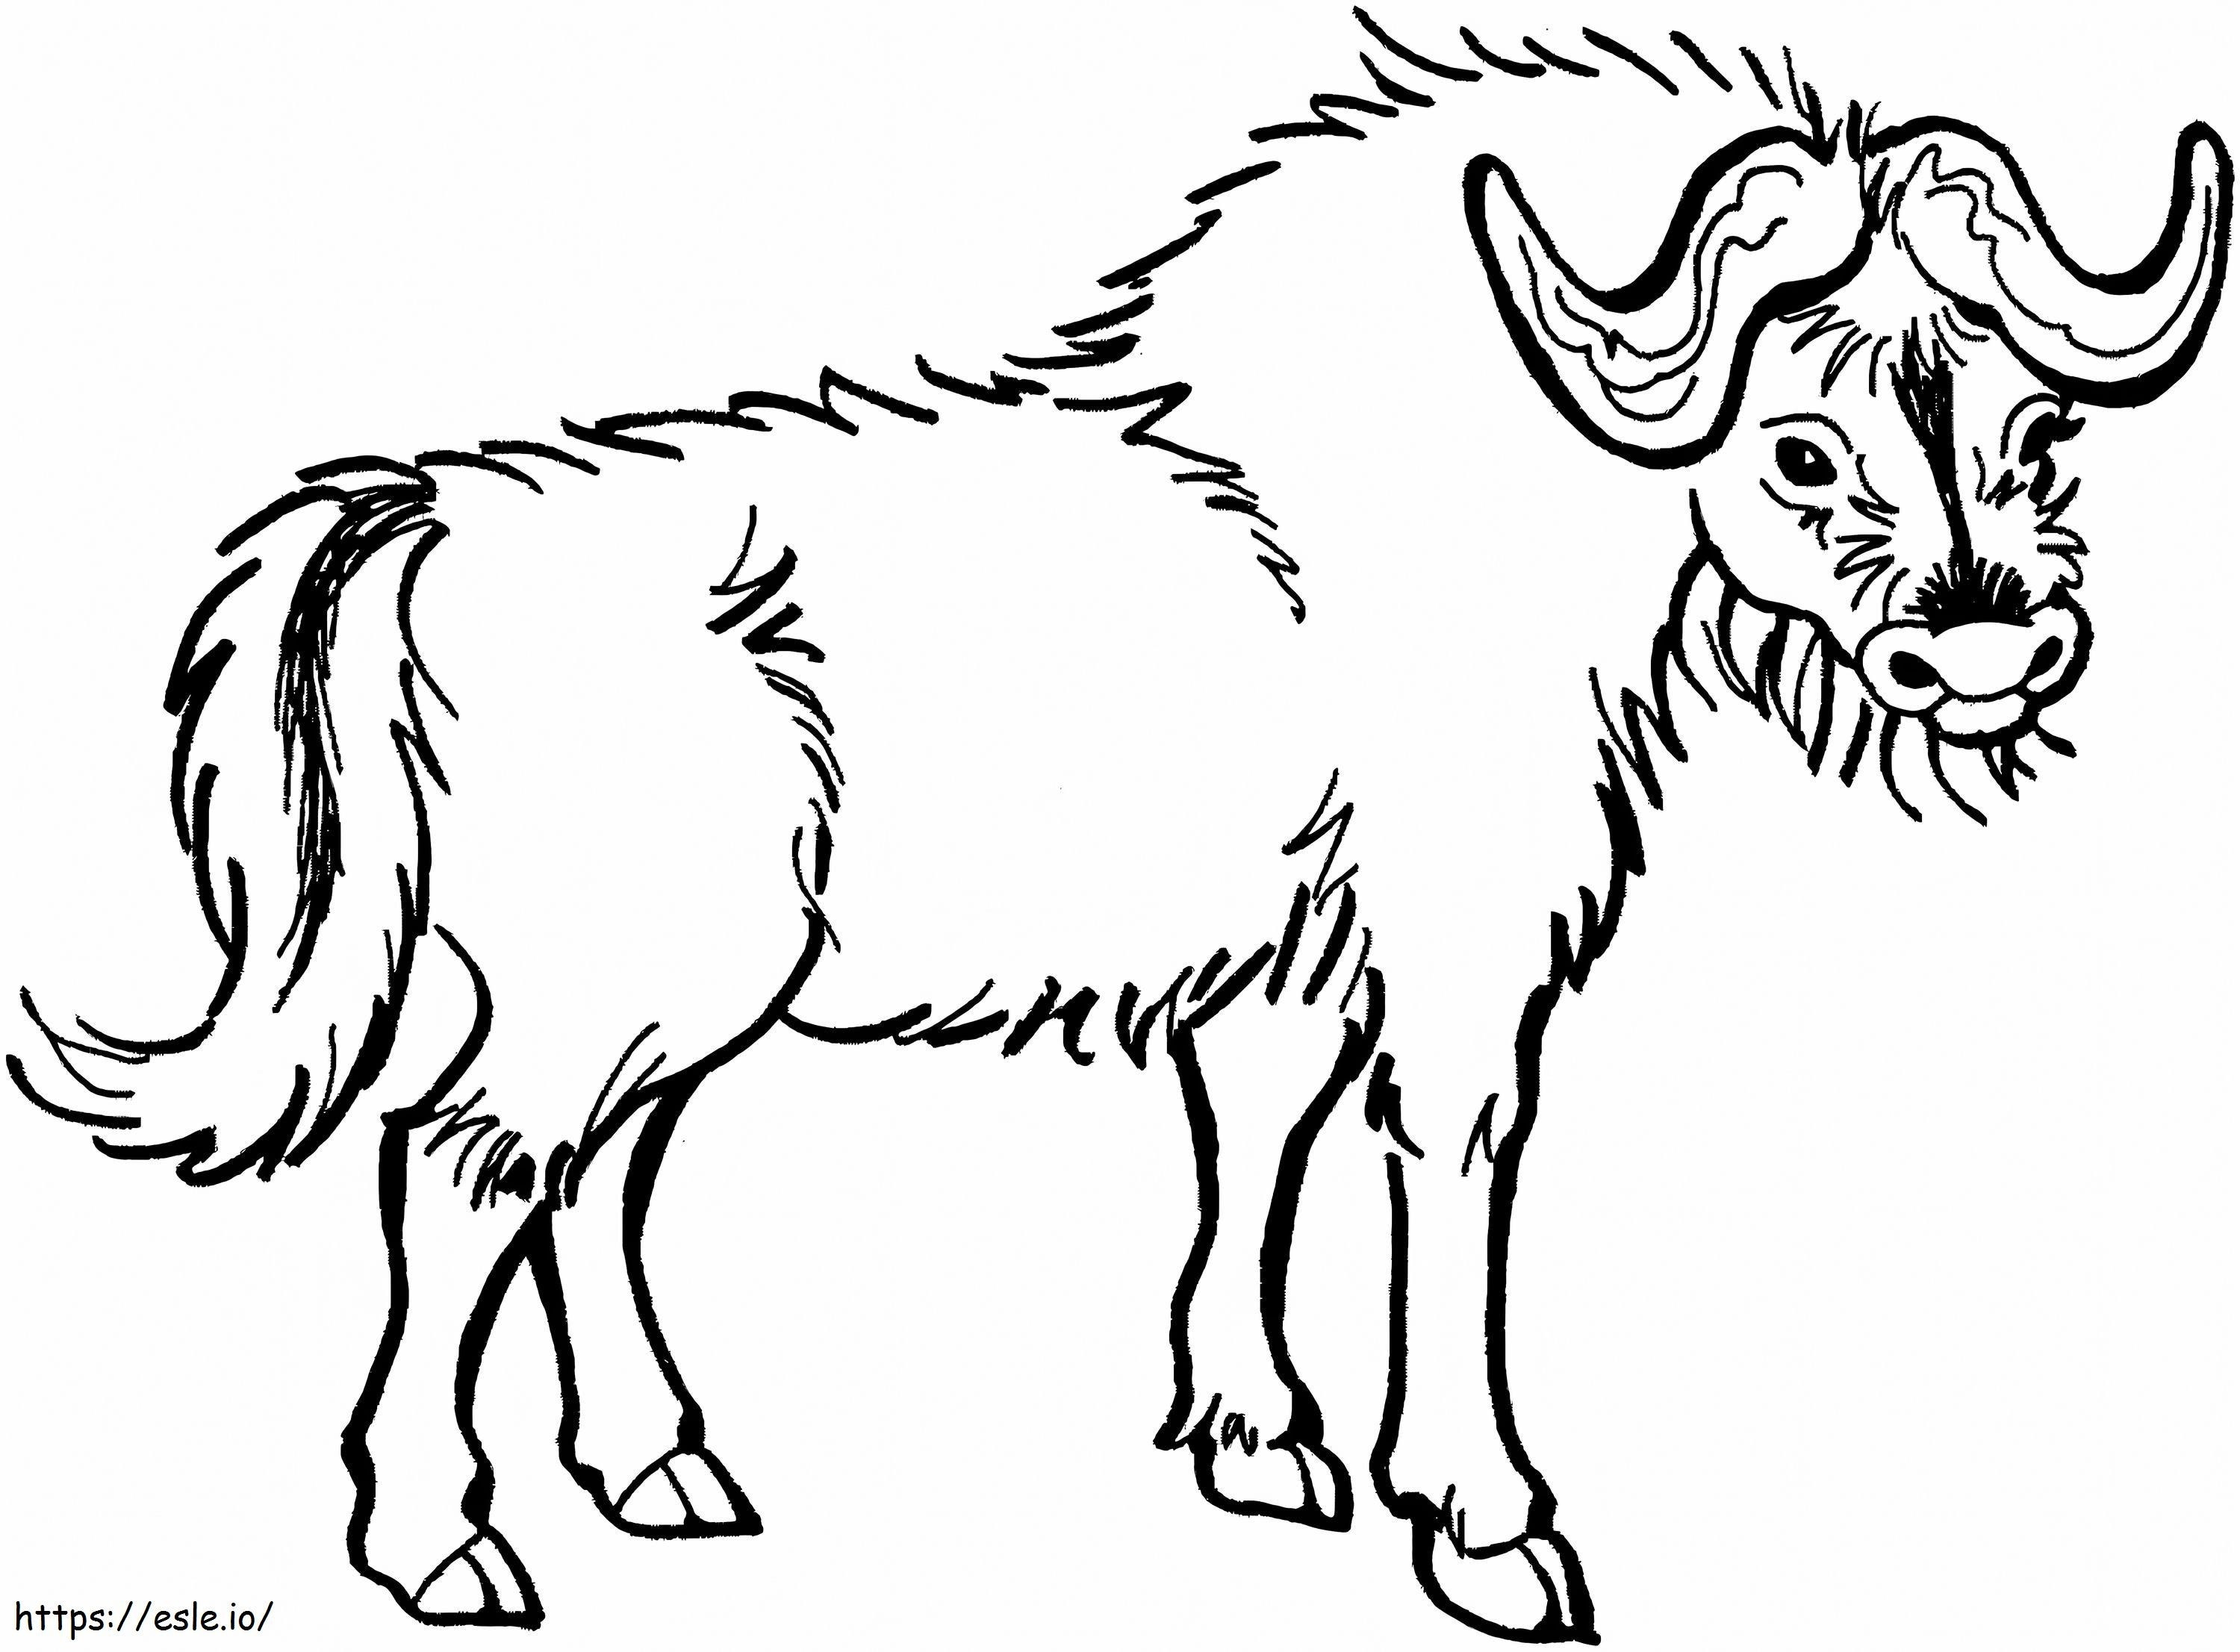 Disegno a mano di bufalo da colorare